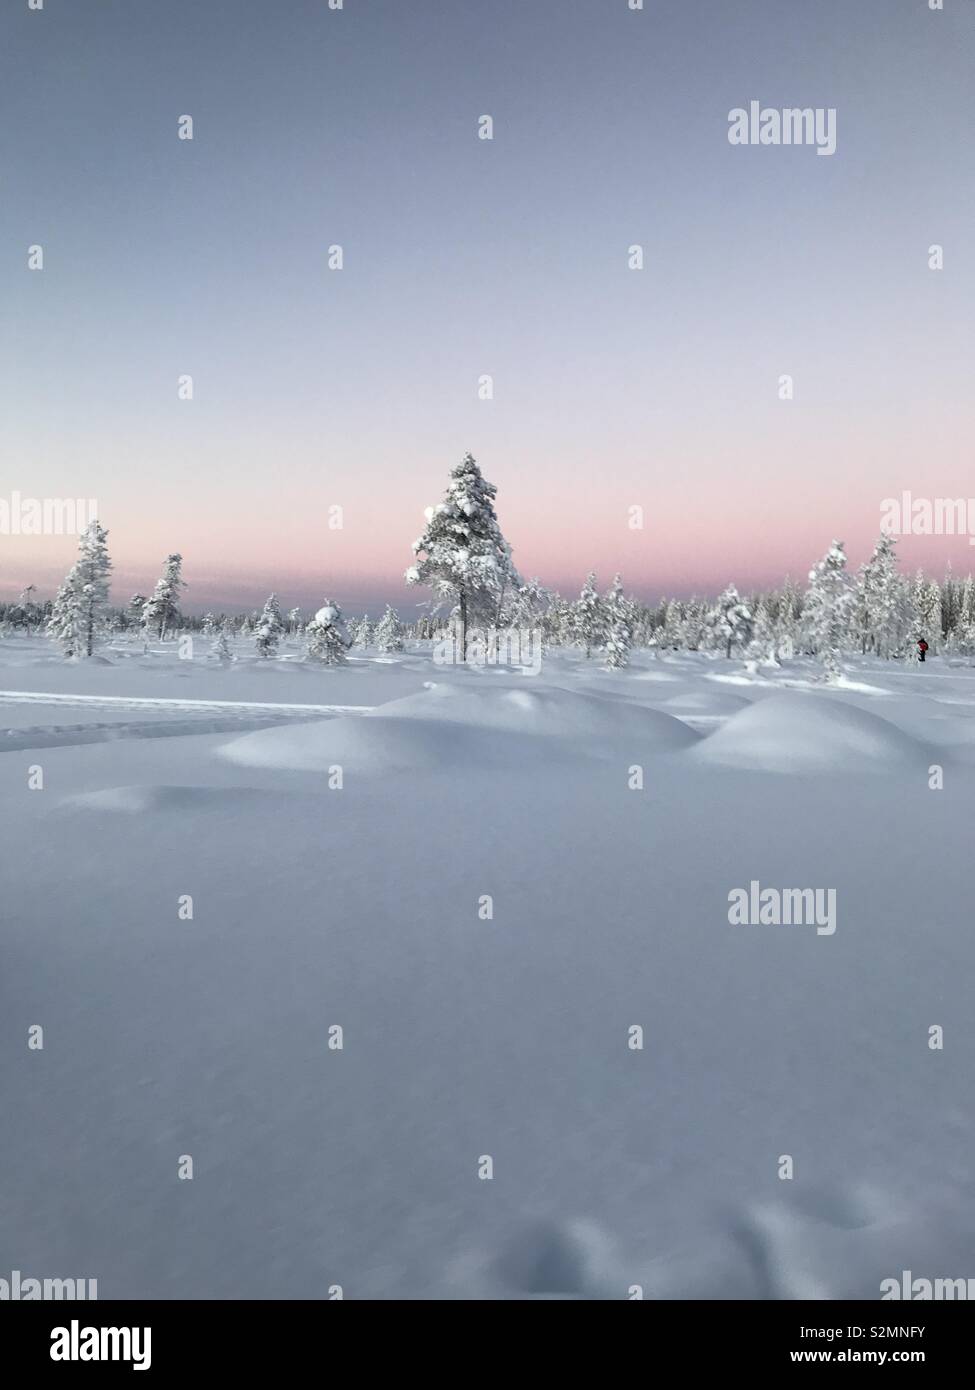 Snow scene in Finland Stock Photo